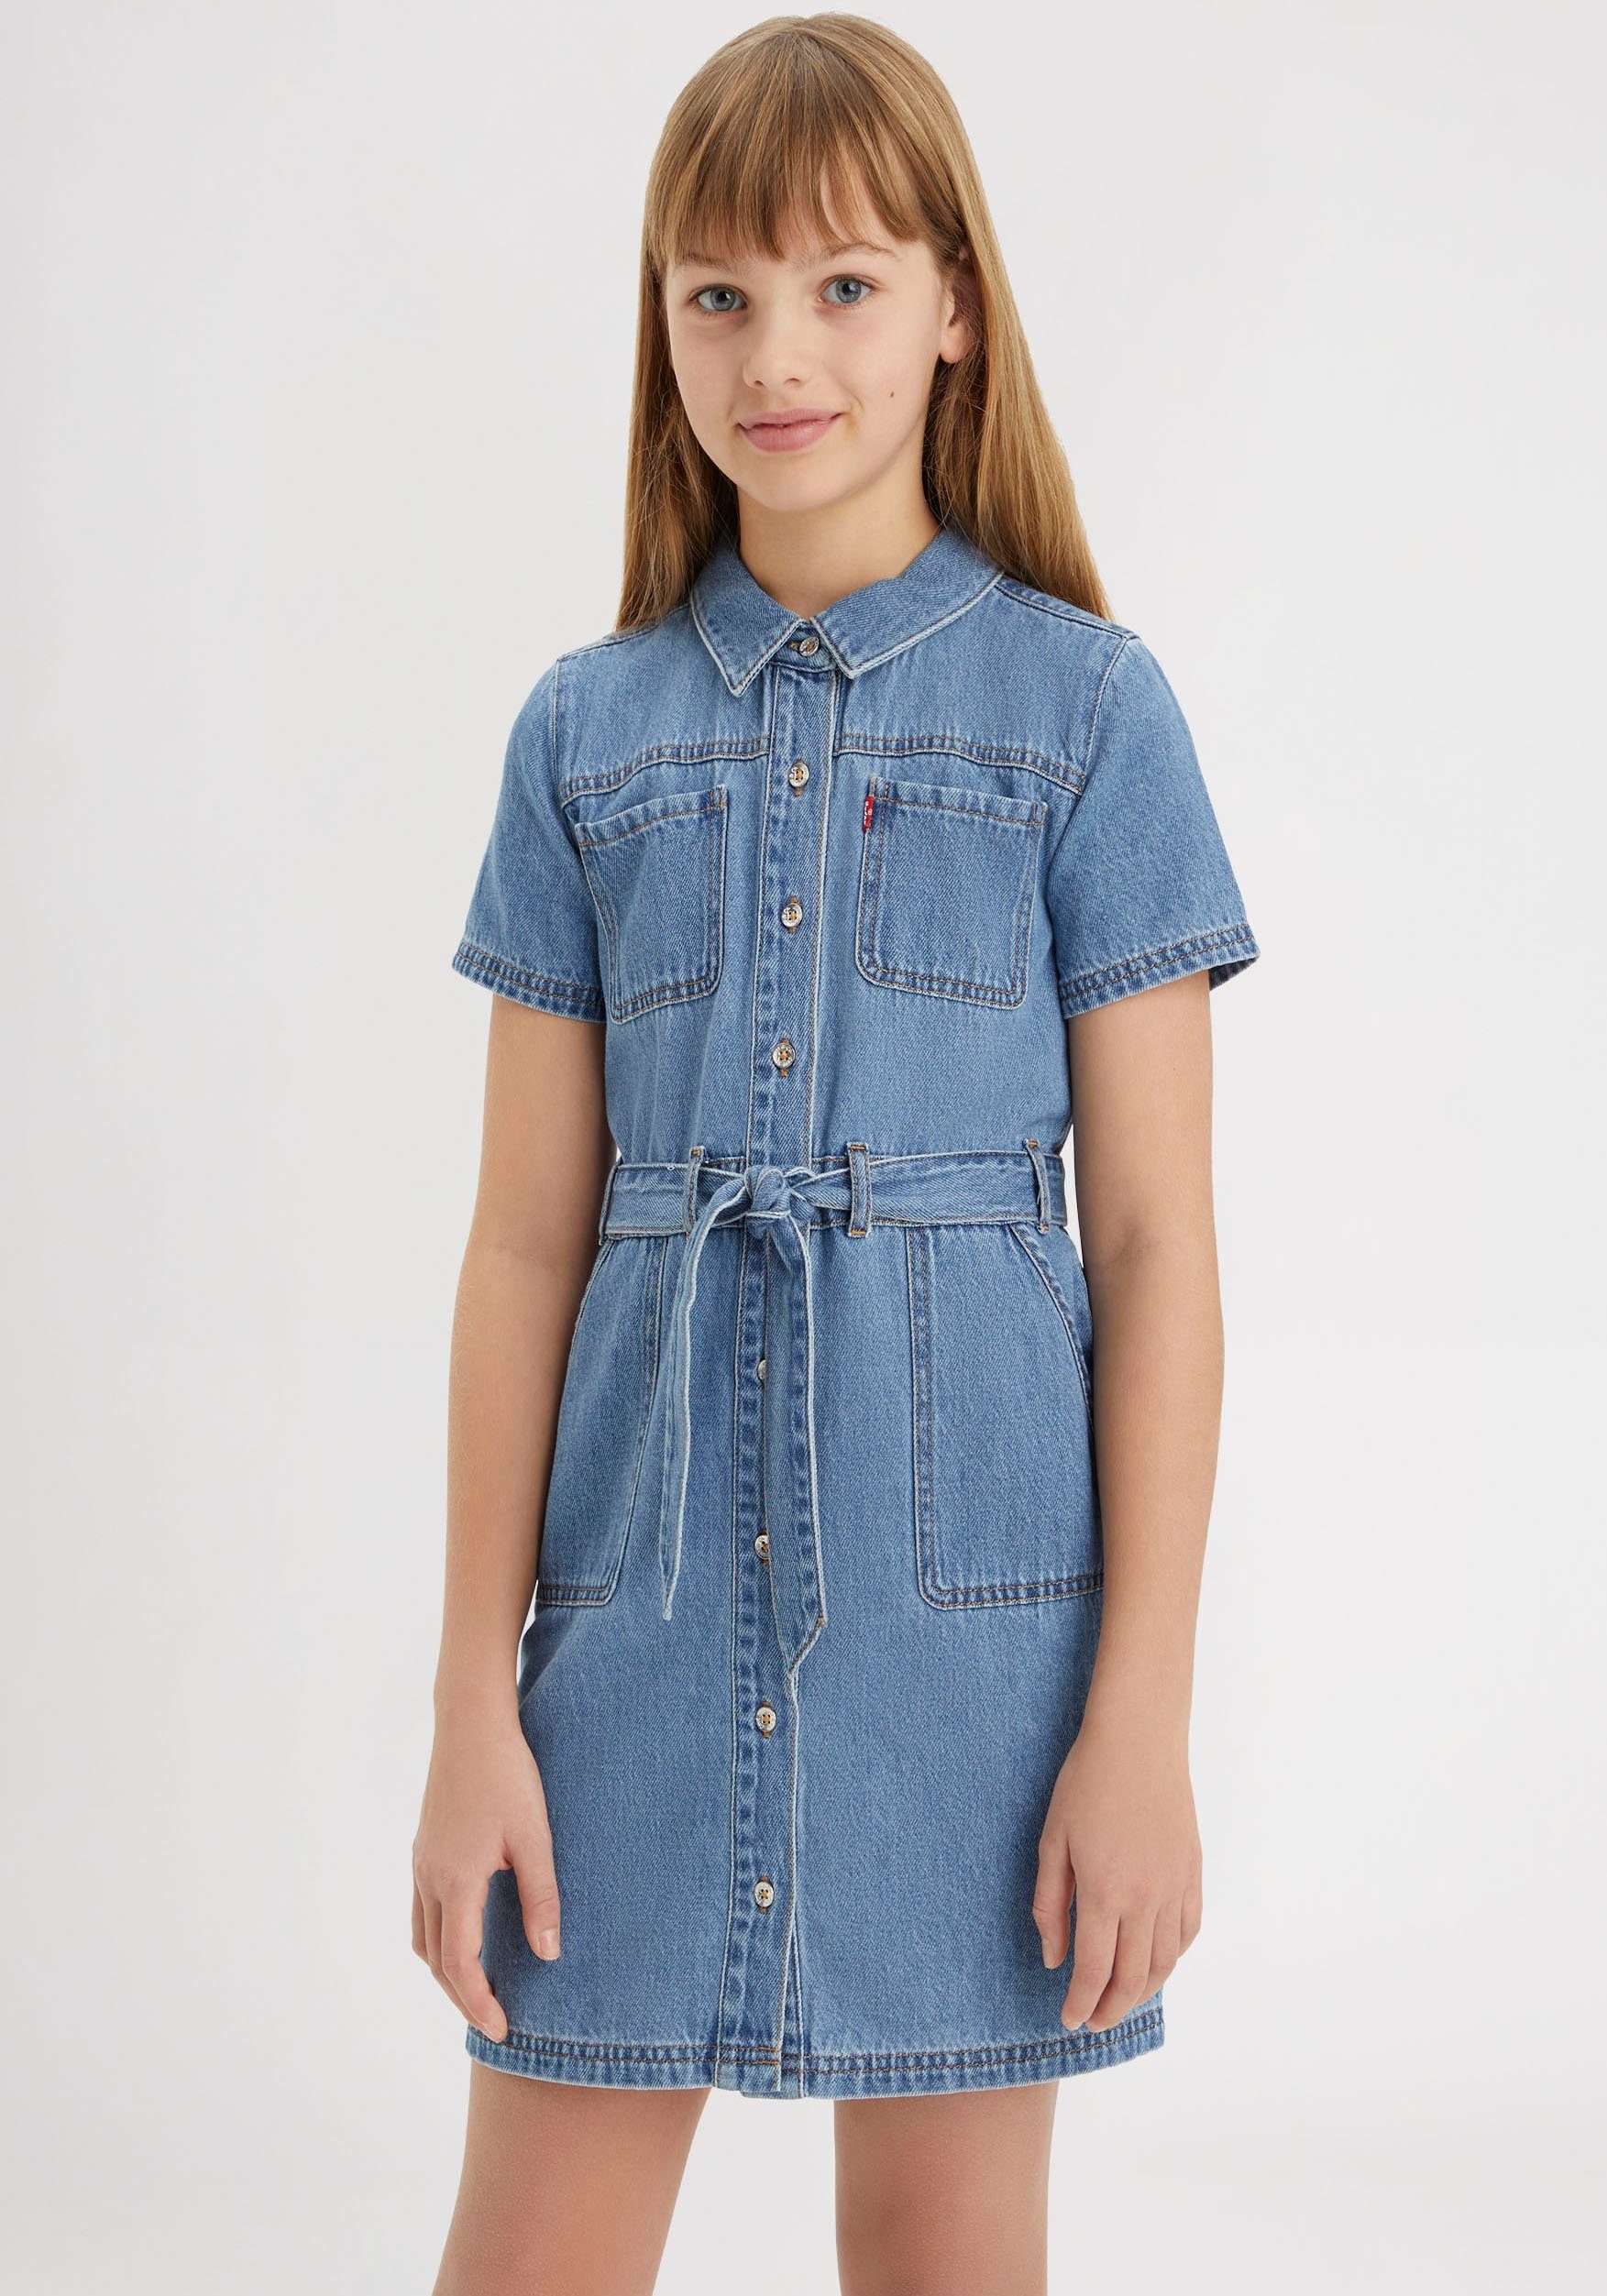 Levi's Kidswear Jeans jurk for girls